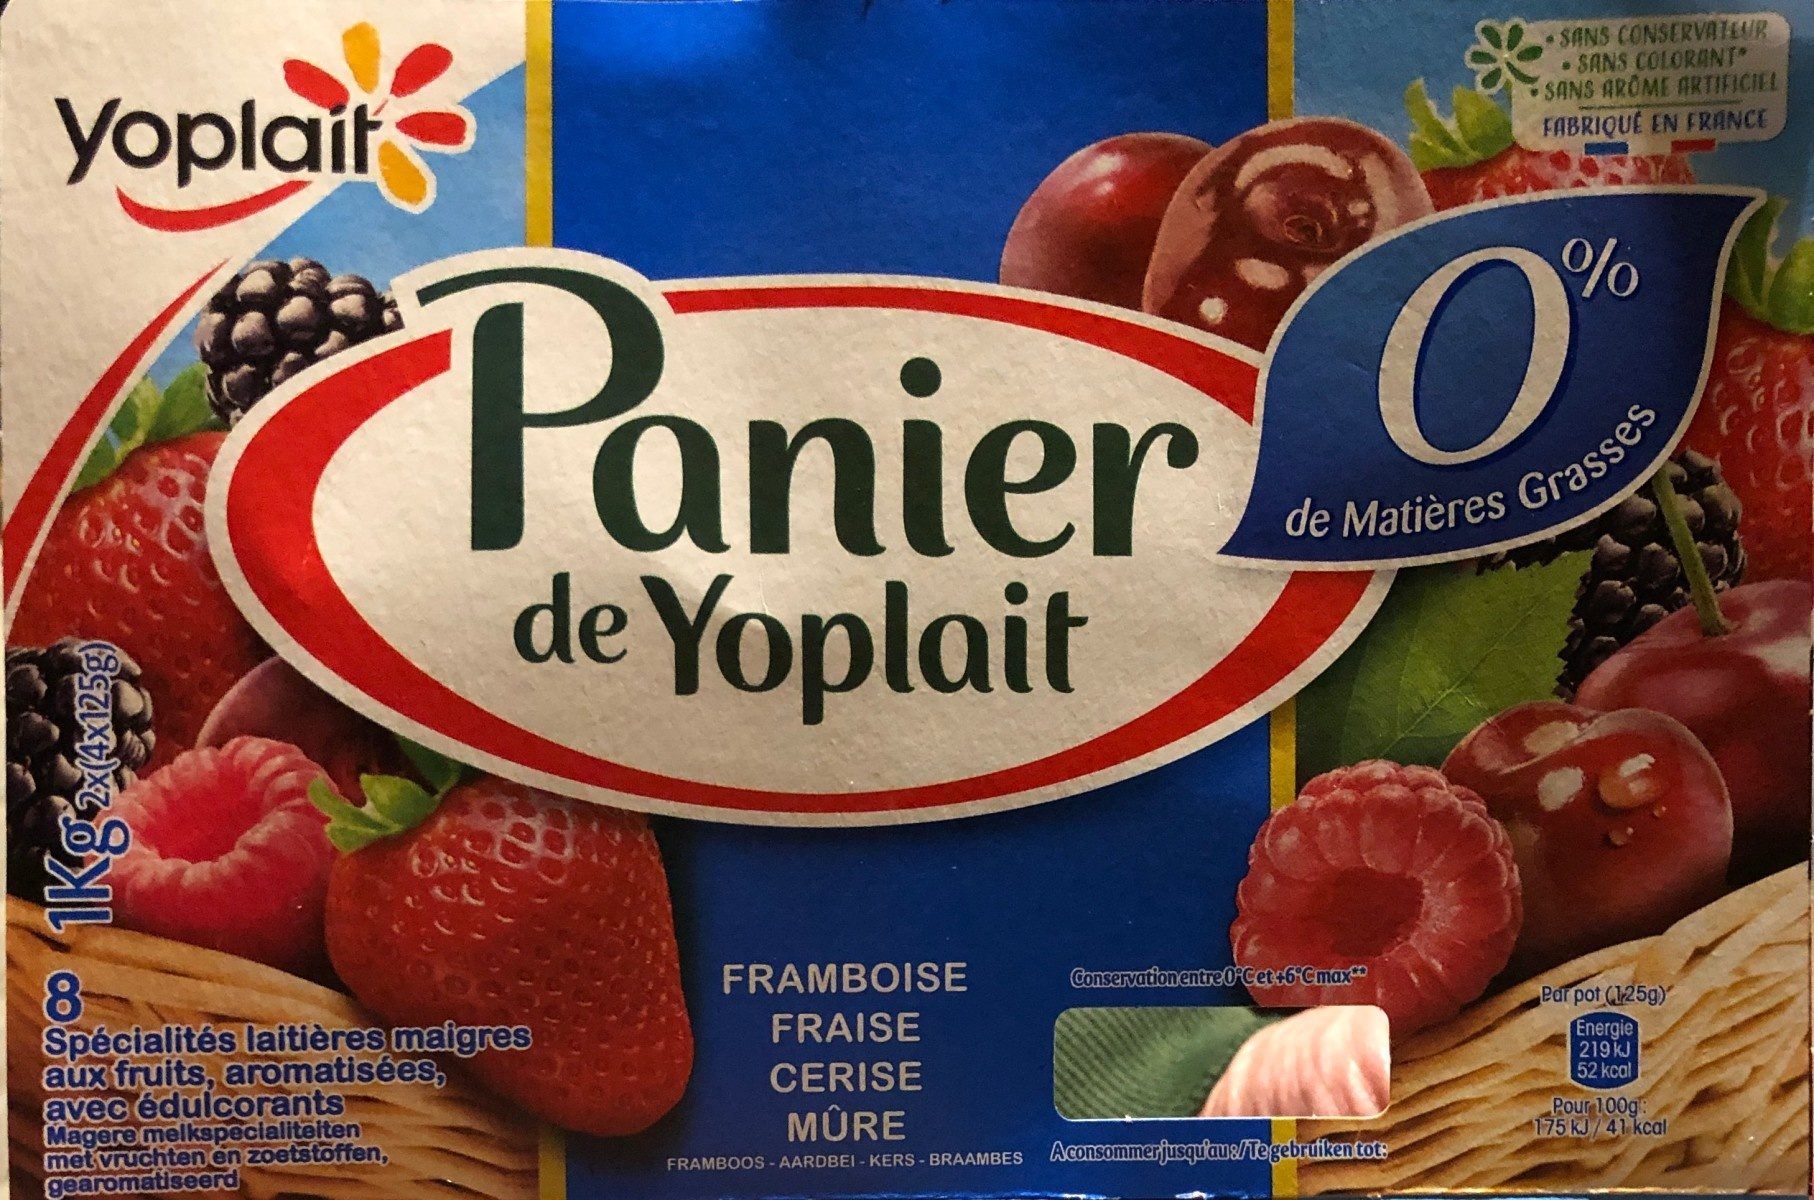 Panier de Yoplait 0% - Product - fr